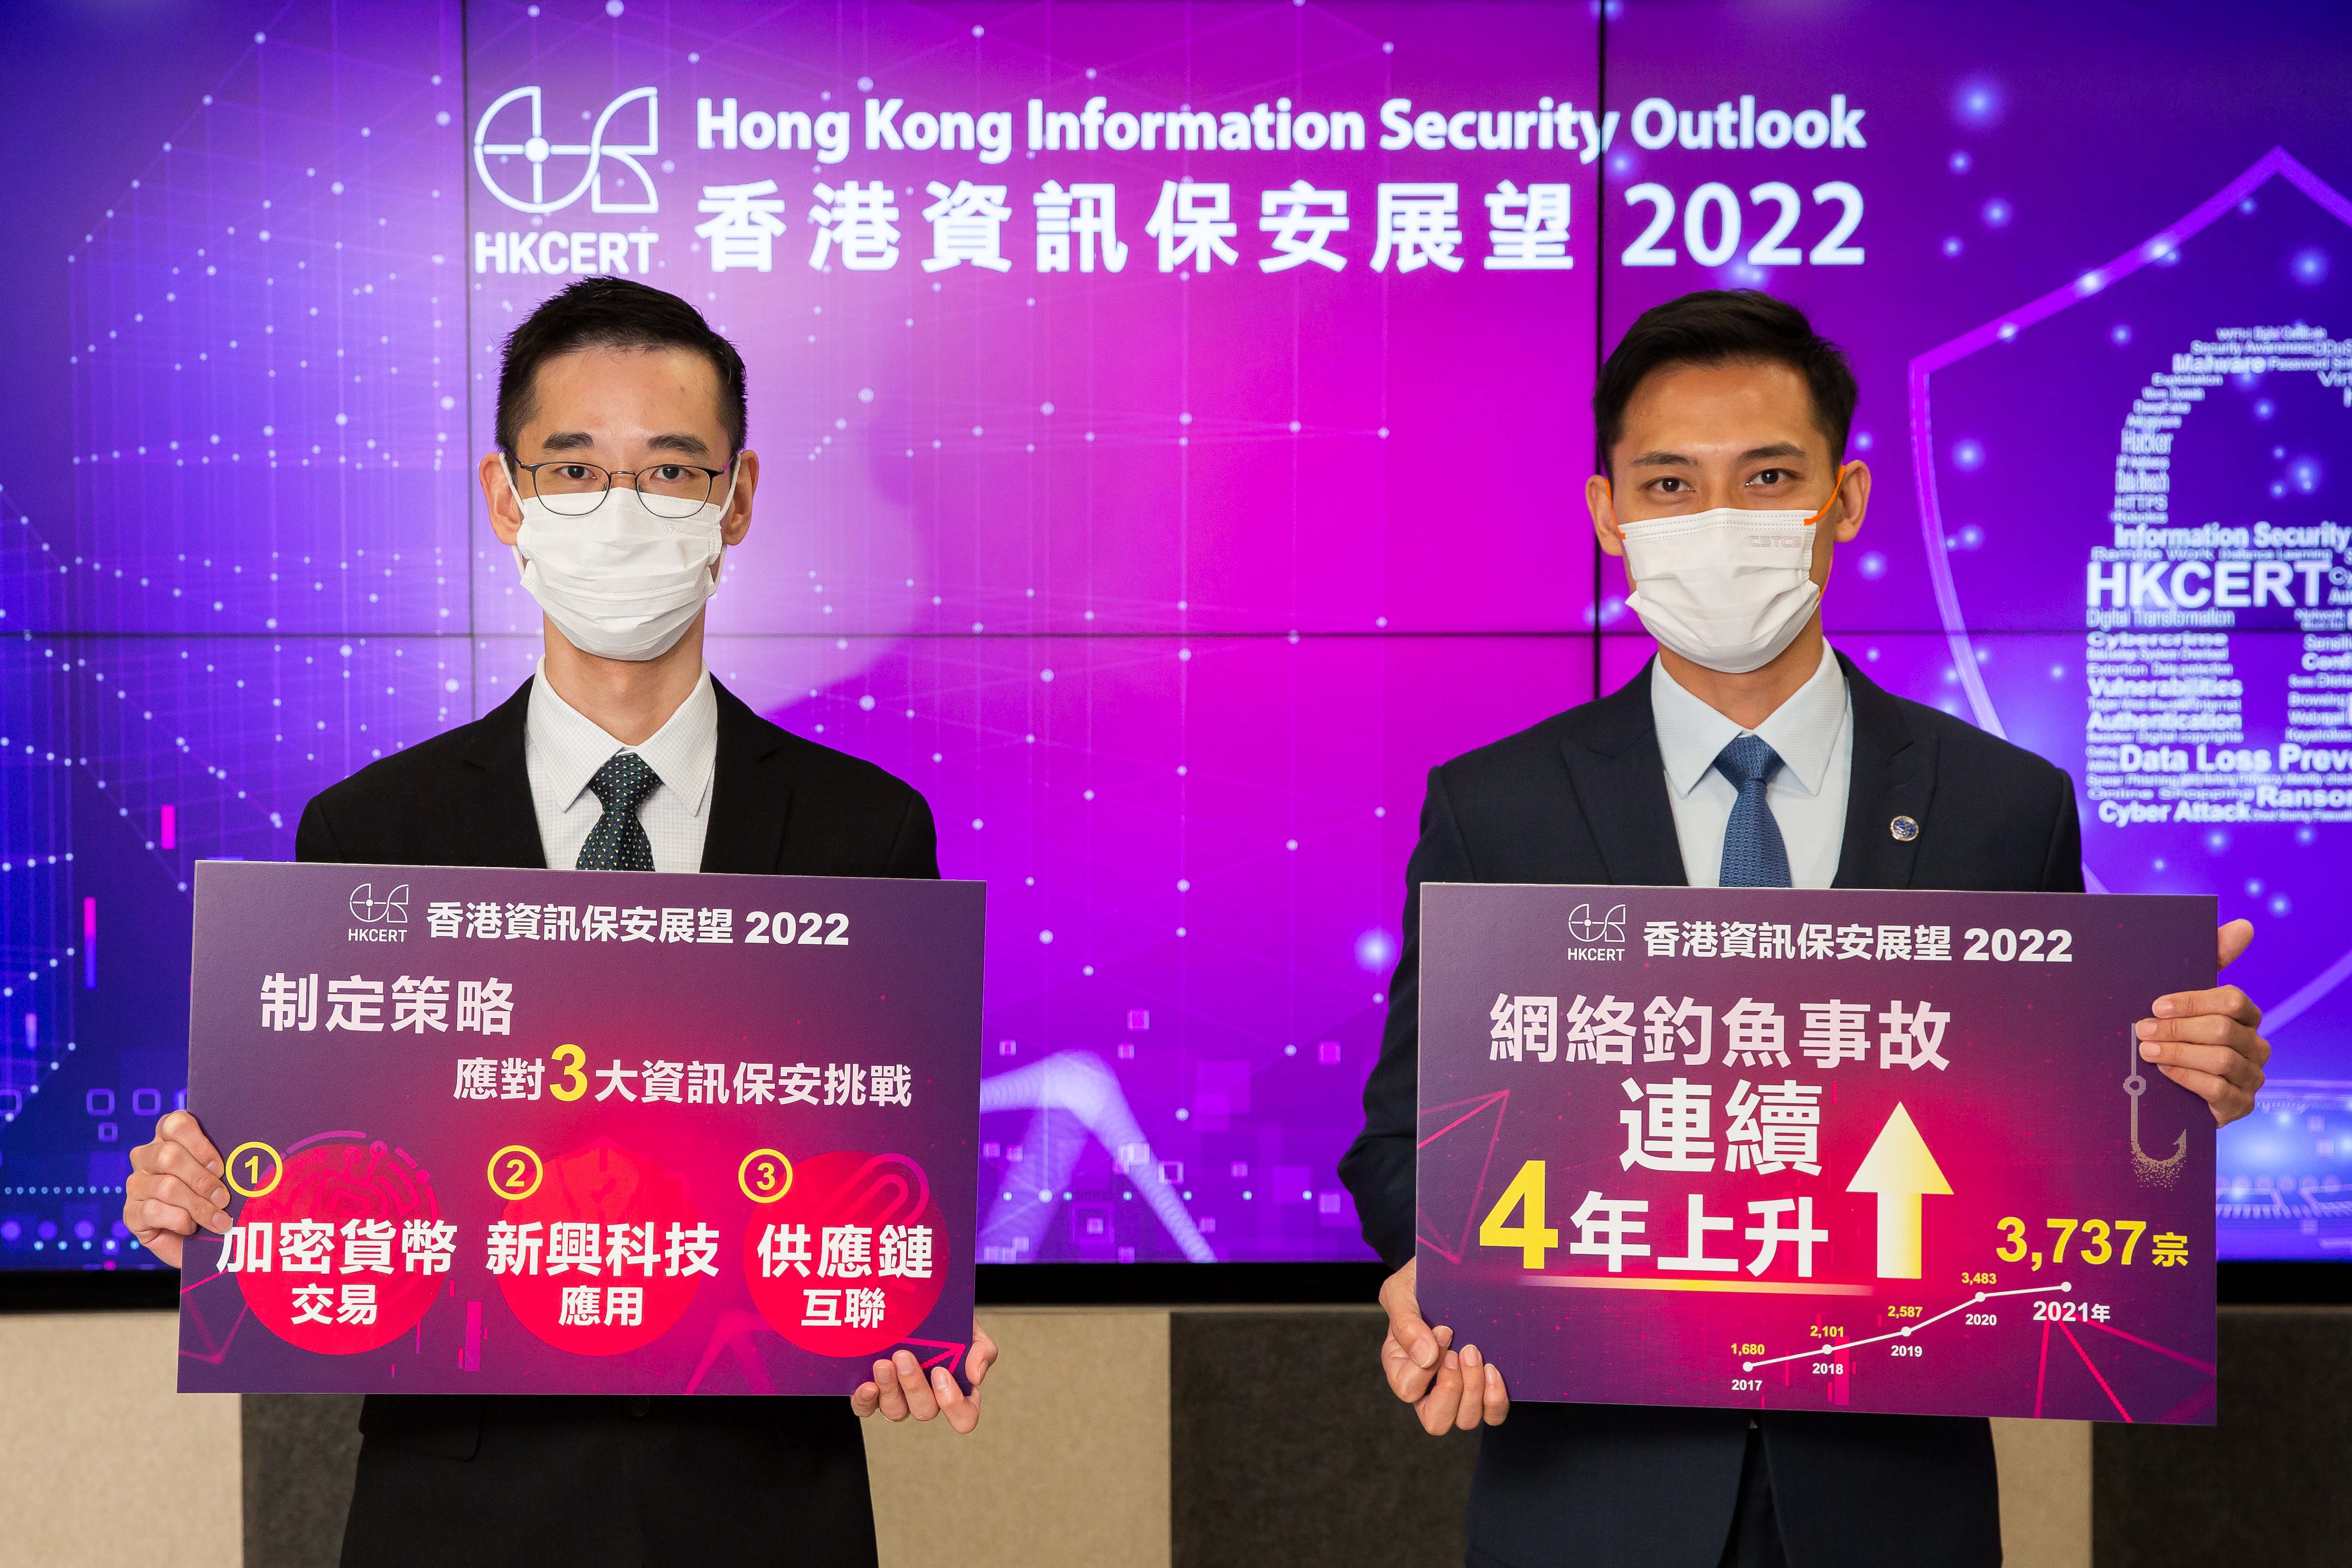 陳仲文（左）指加密幣和元宇宙興起增加相關網絡安全風險；旁為范俊業。